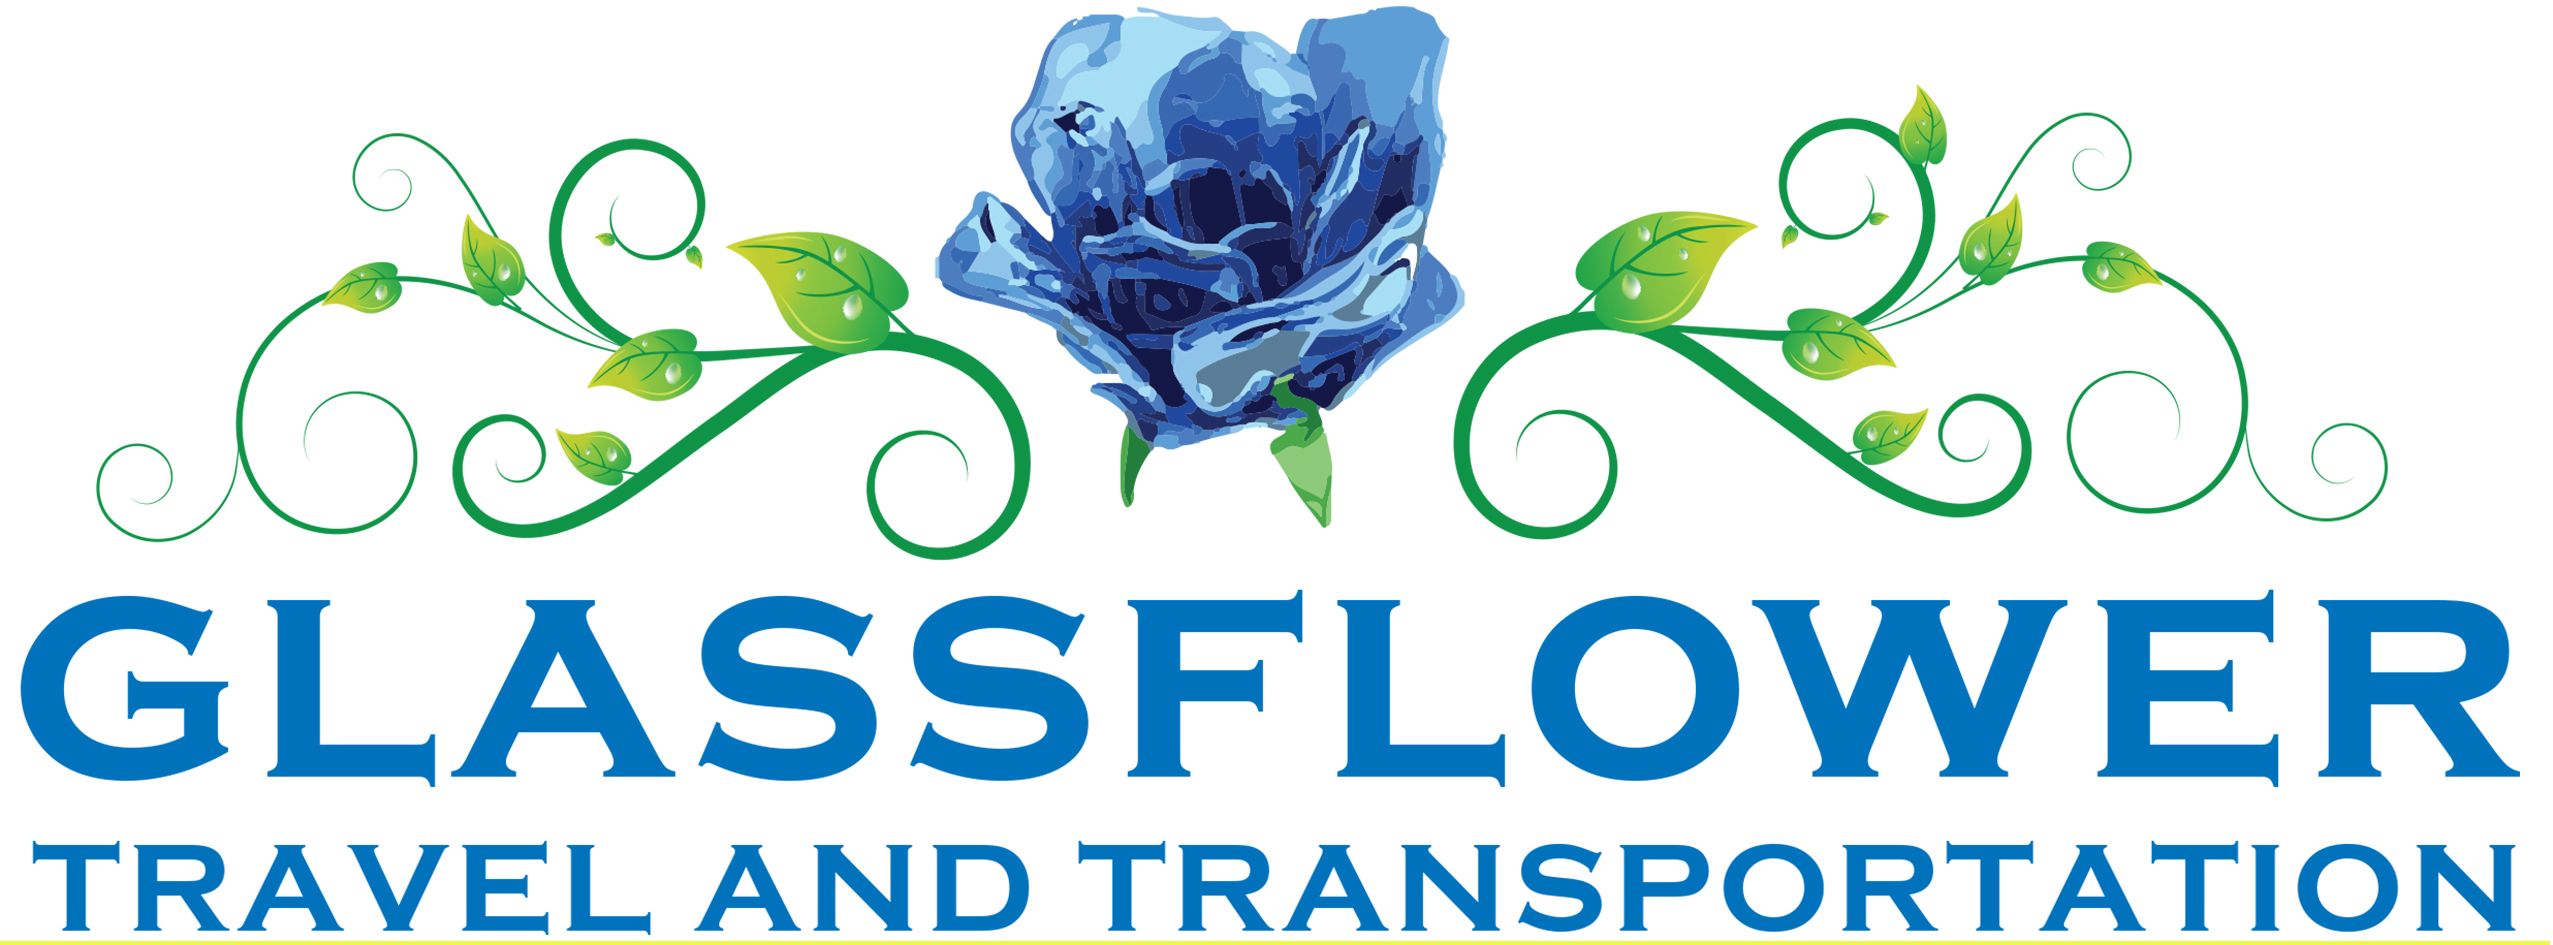 Glassflower logo